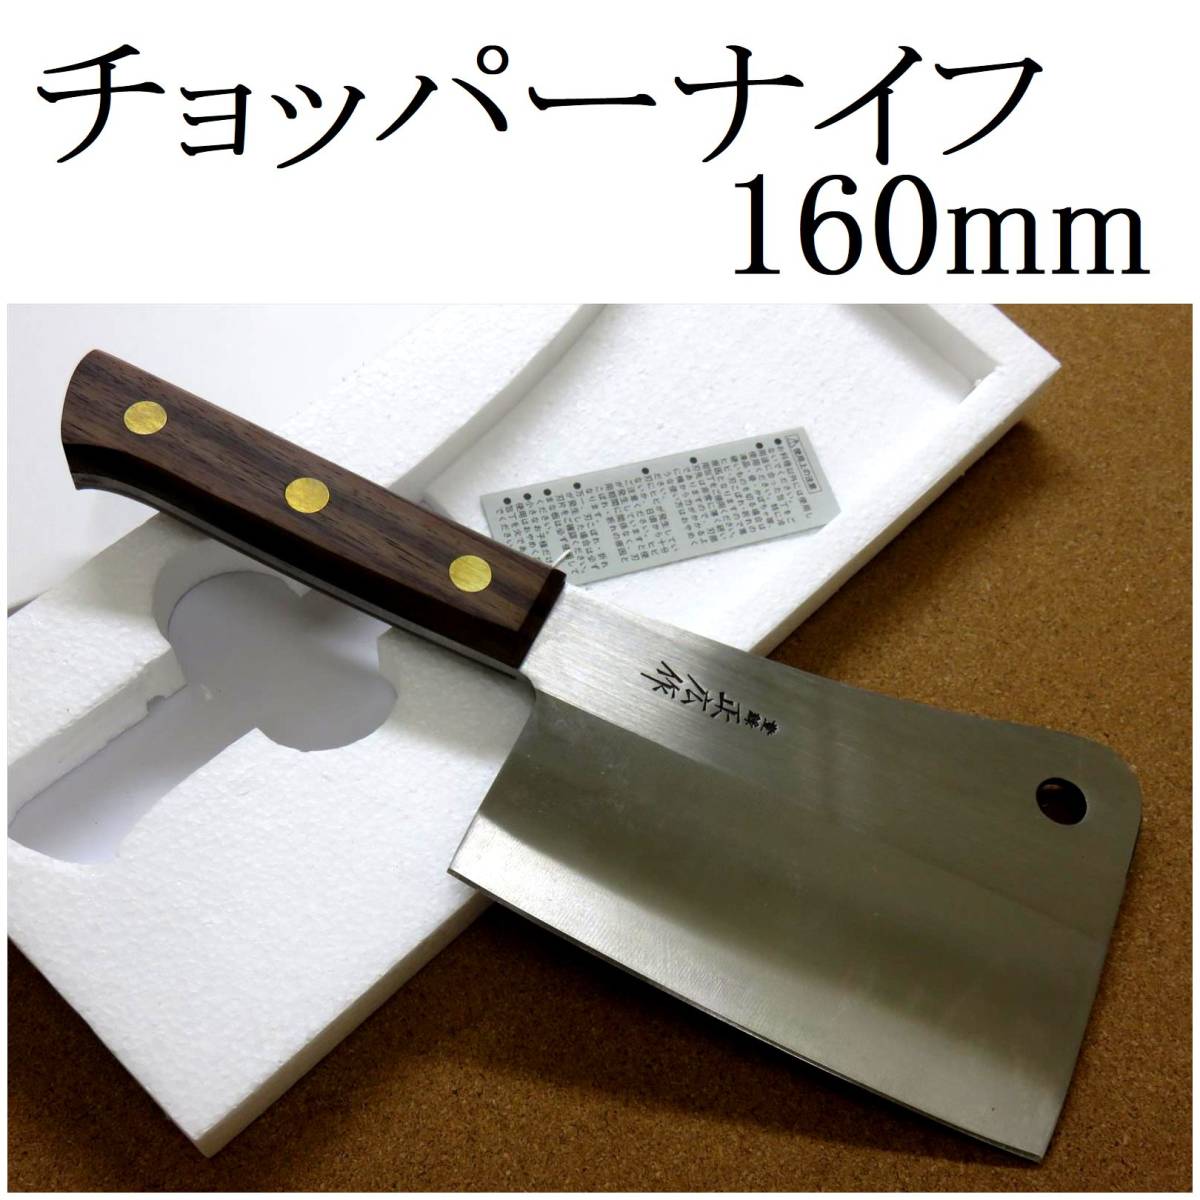 関の刃物 チョッパーナイフ 16cm (160mm) 正広 ローズウッド 日本鋼 大きな肉をナタのように叩き切 両刃包丁 クレバーナイフ 国産日本製